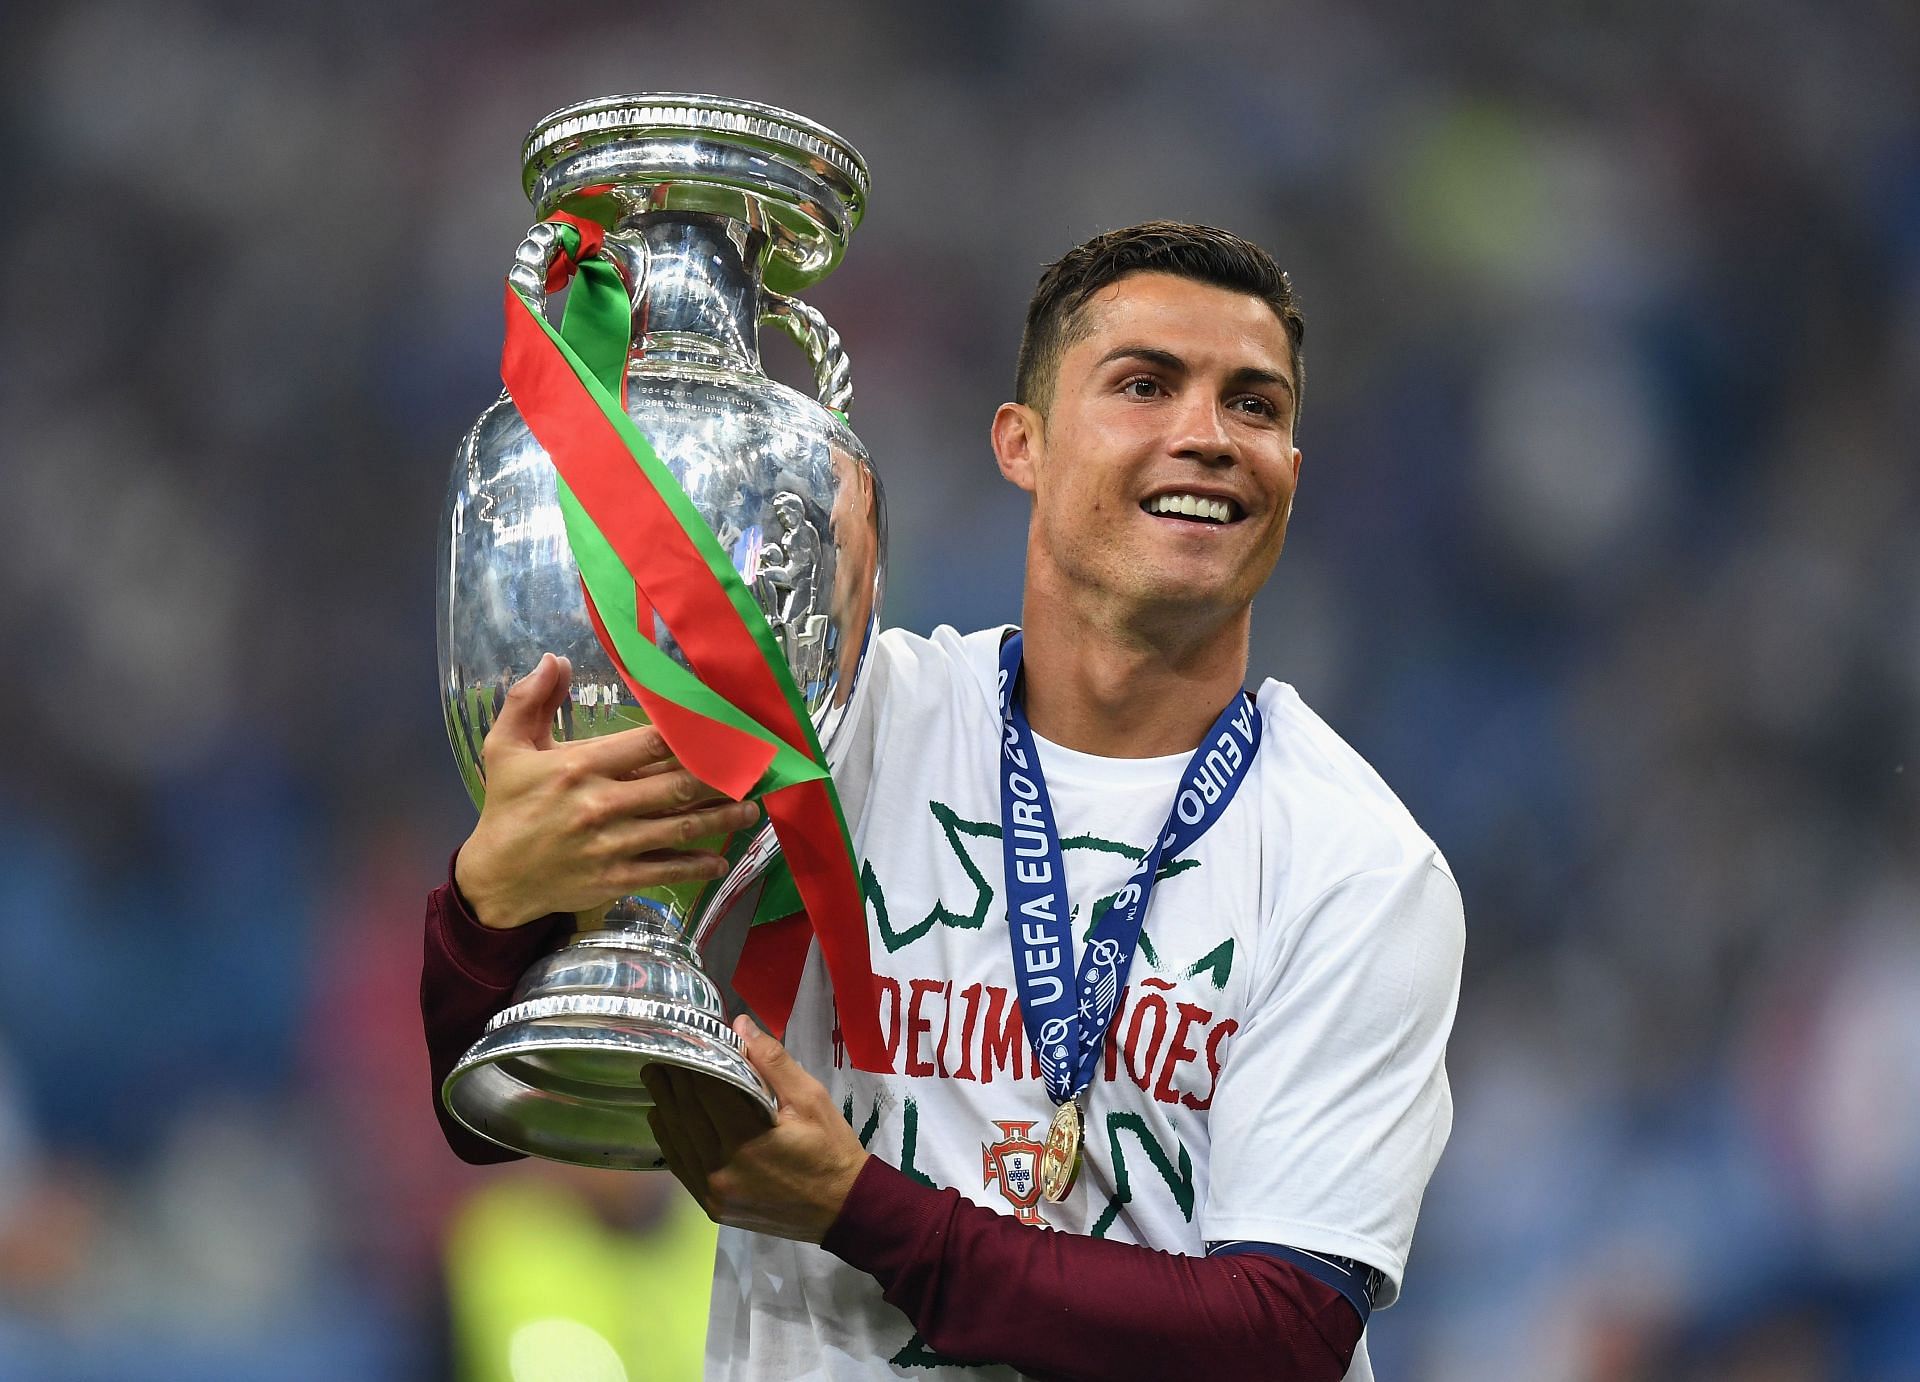 Ronaldo won the Euros in 2016.